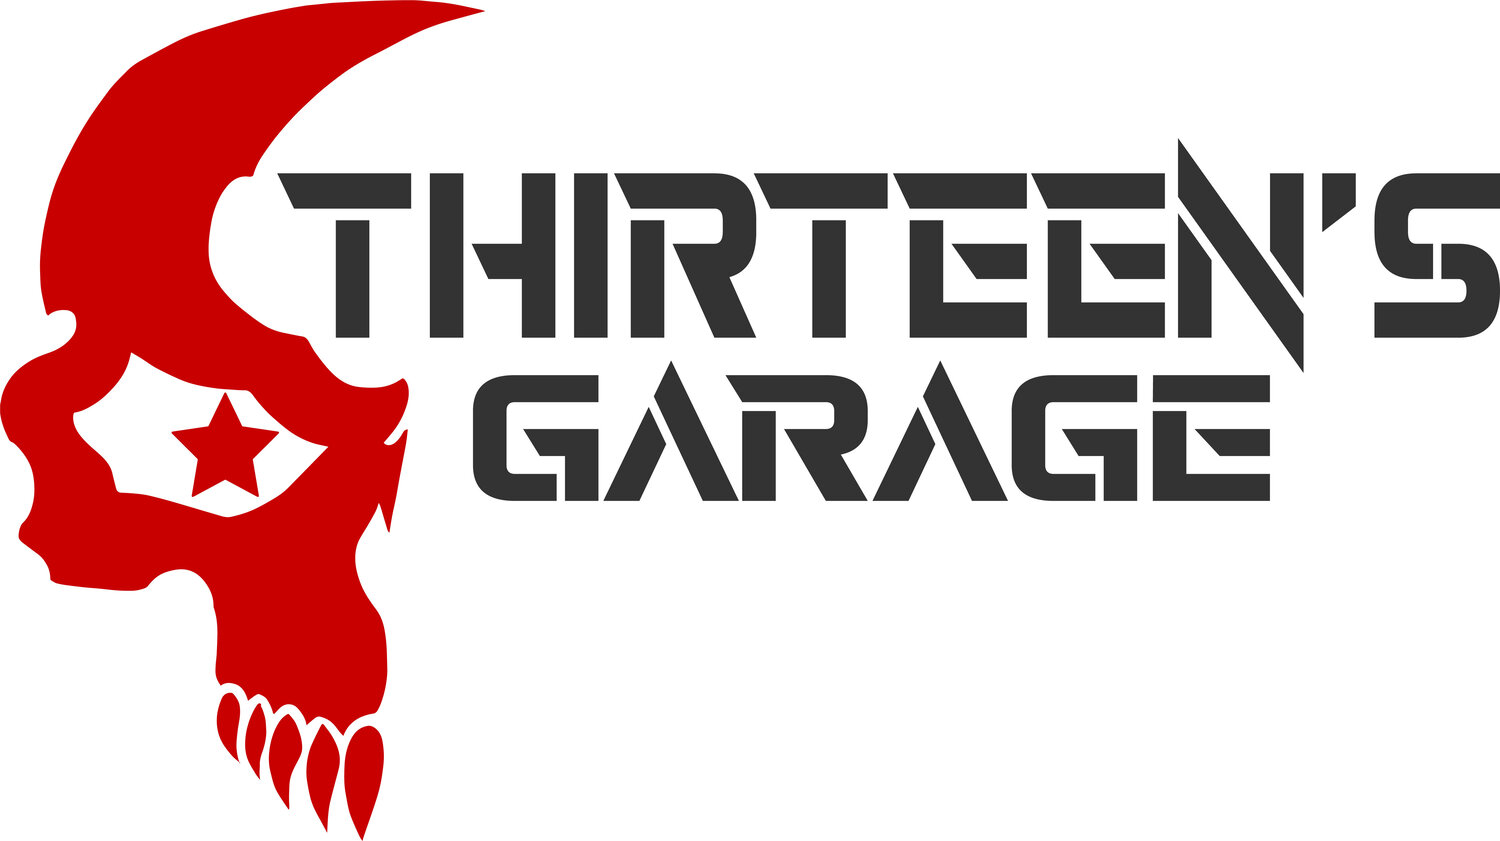 Thirteen's Garage 1